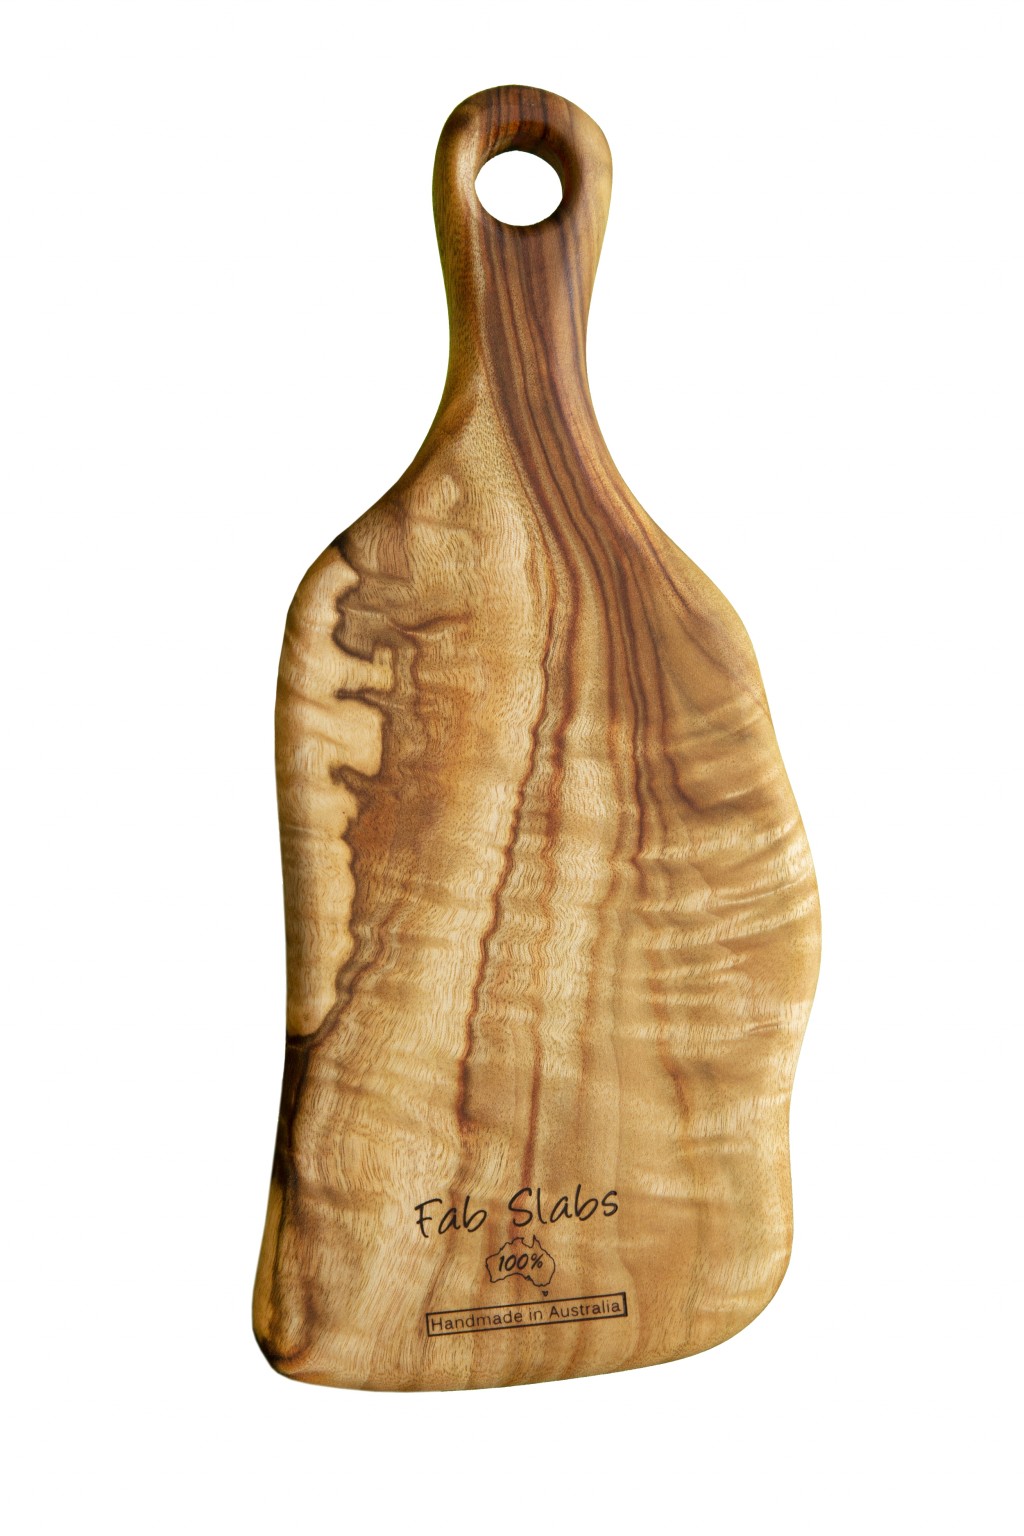 Artisan Organic Anti Bacterial Natural Wood Paddle Board